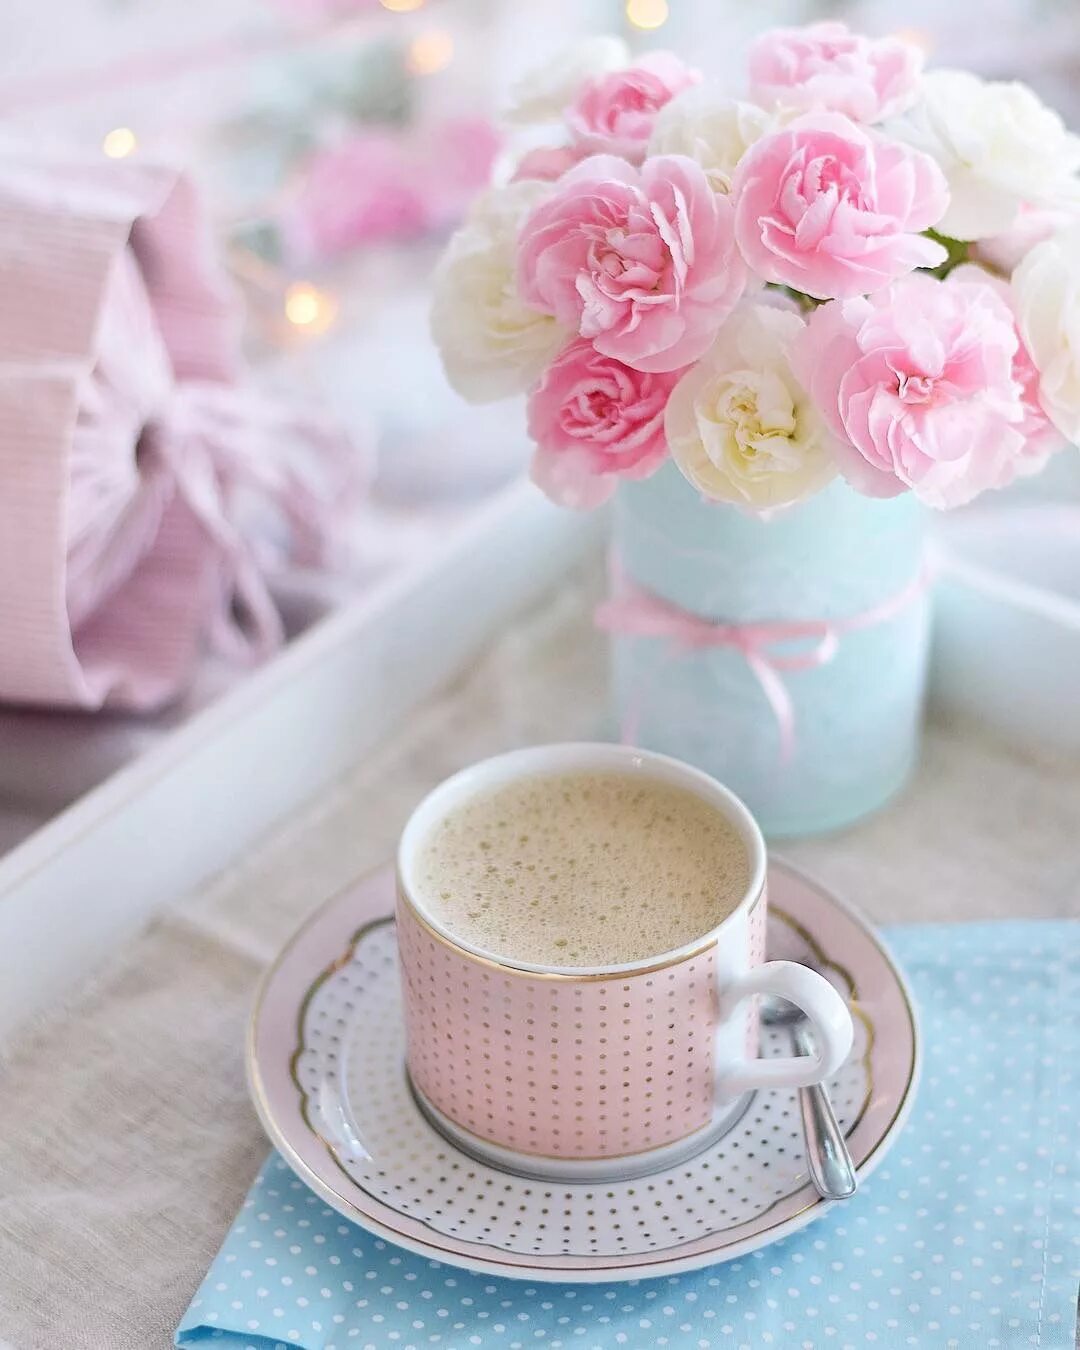 Нежное утро. Нежные утренние цветы. Кофе и цветы. С добрым утром.